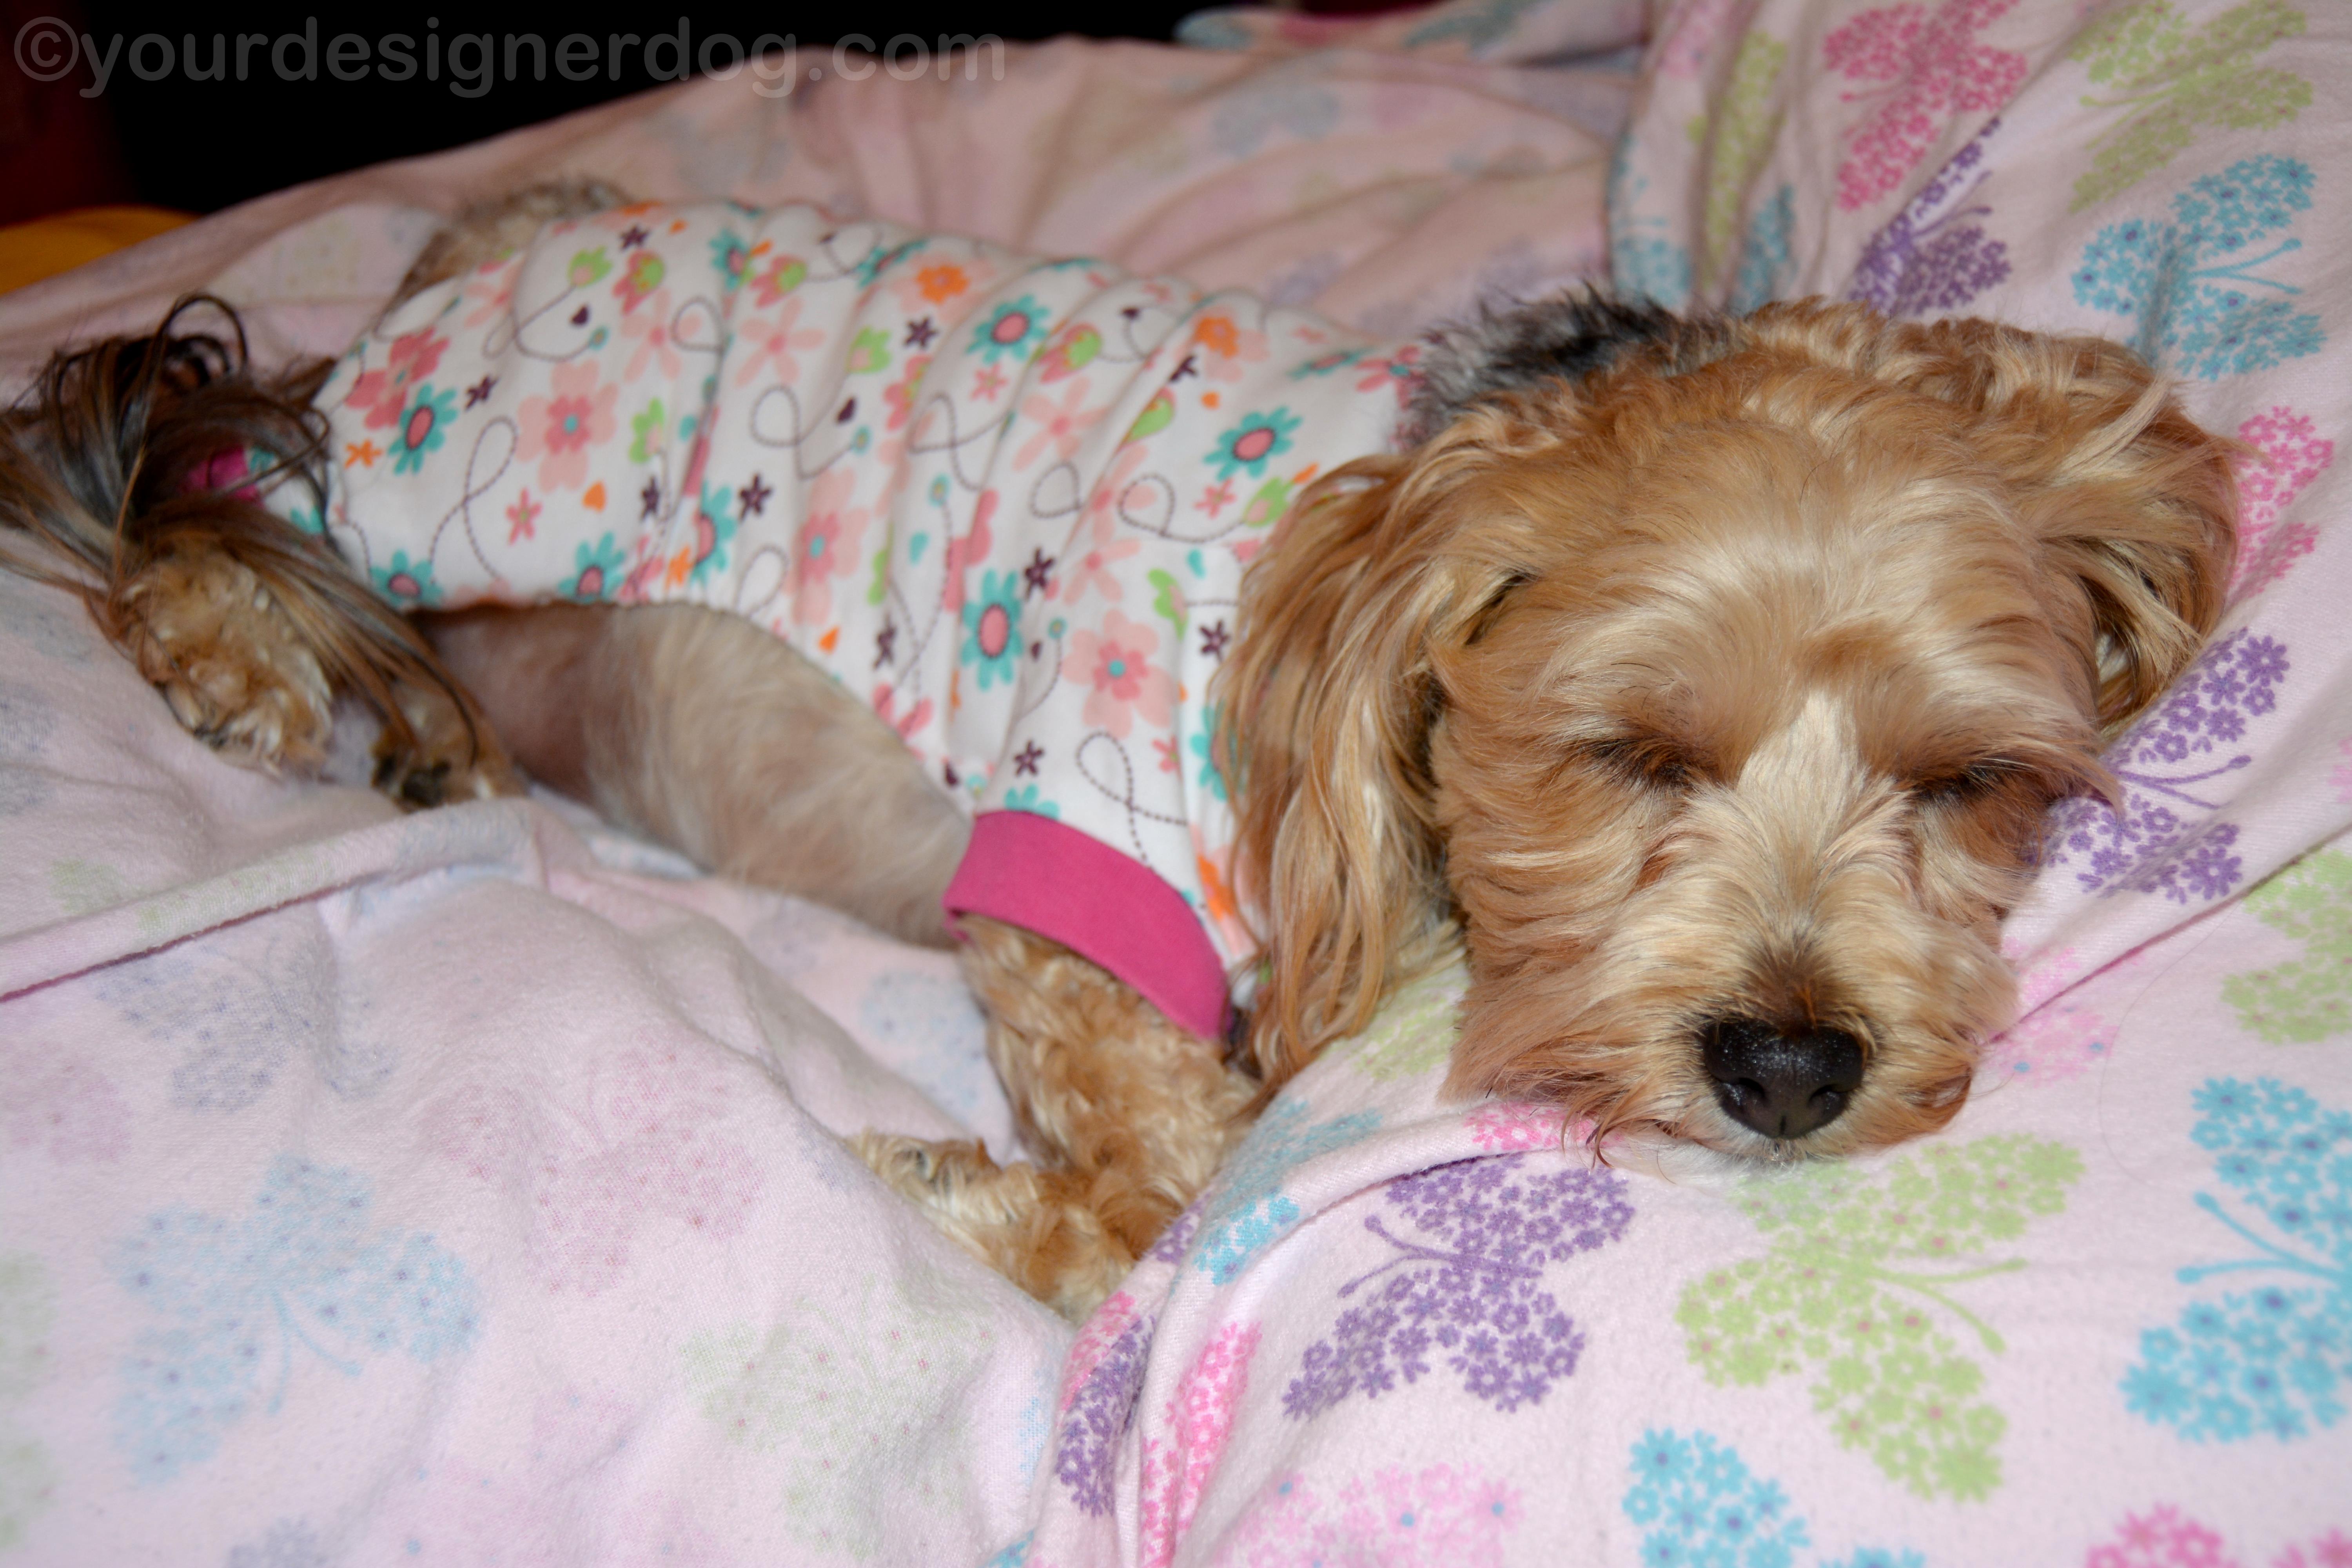 dogs, designer dogs, yorkipoo, yorkie poo, sleepy puppy, dog pajamas